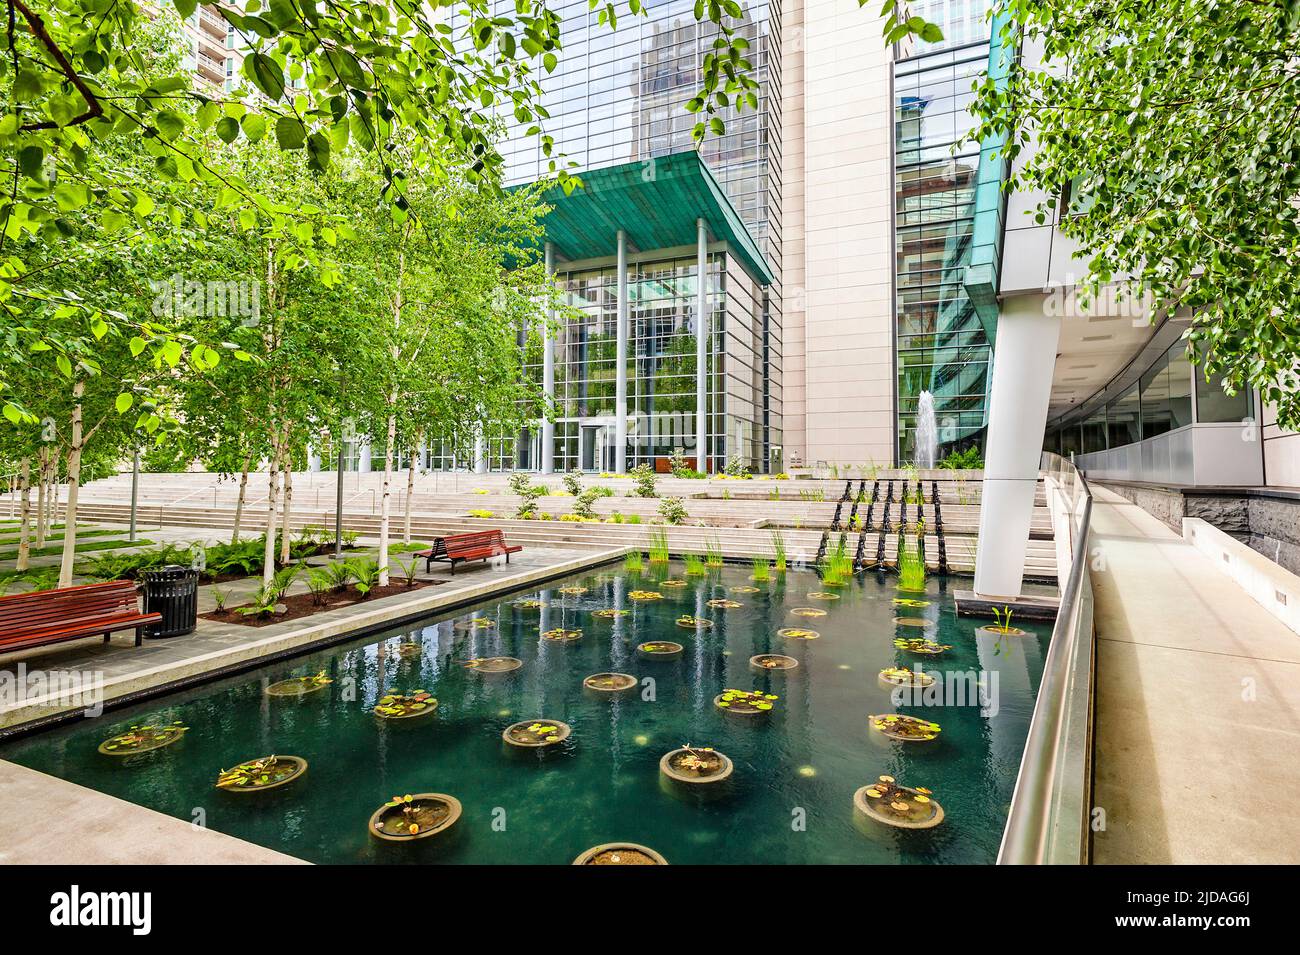 Une place de la ville à Seattle, une place avec des arbres et une piscine d'eau avec des plantes. Banque D'Images